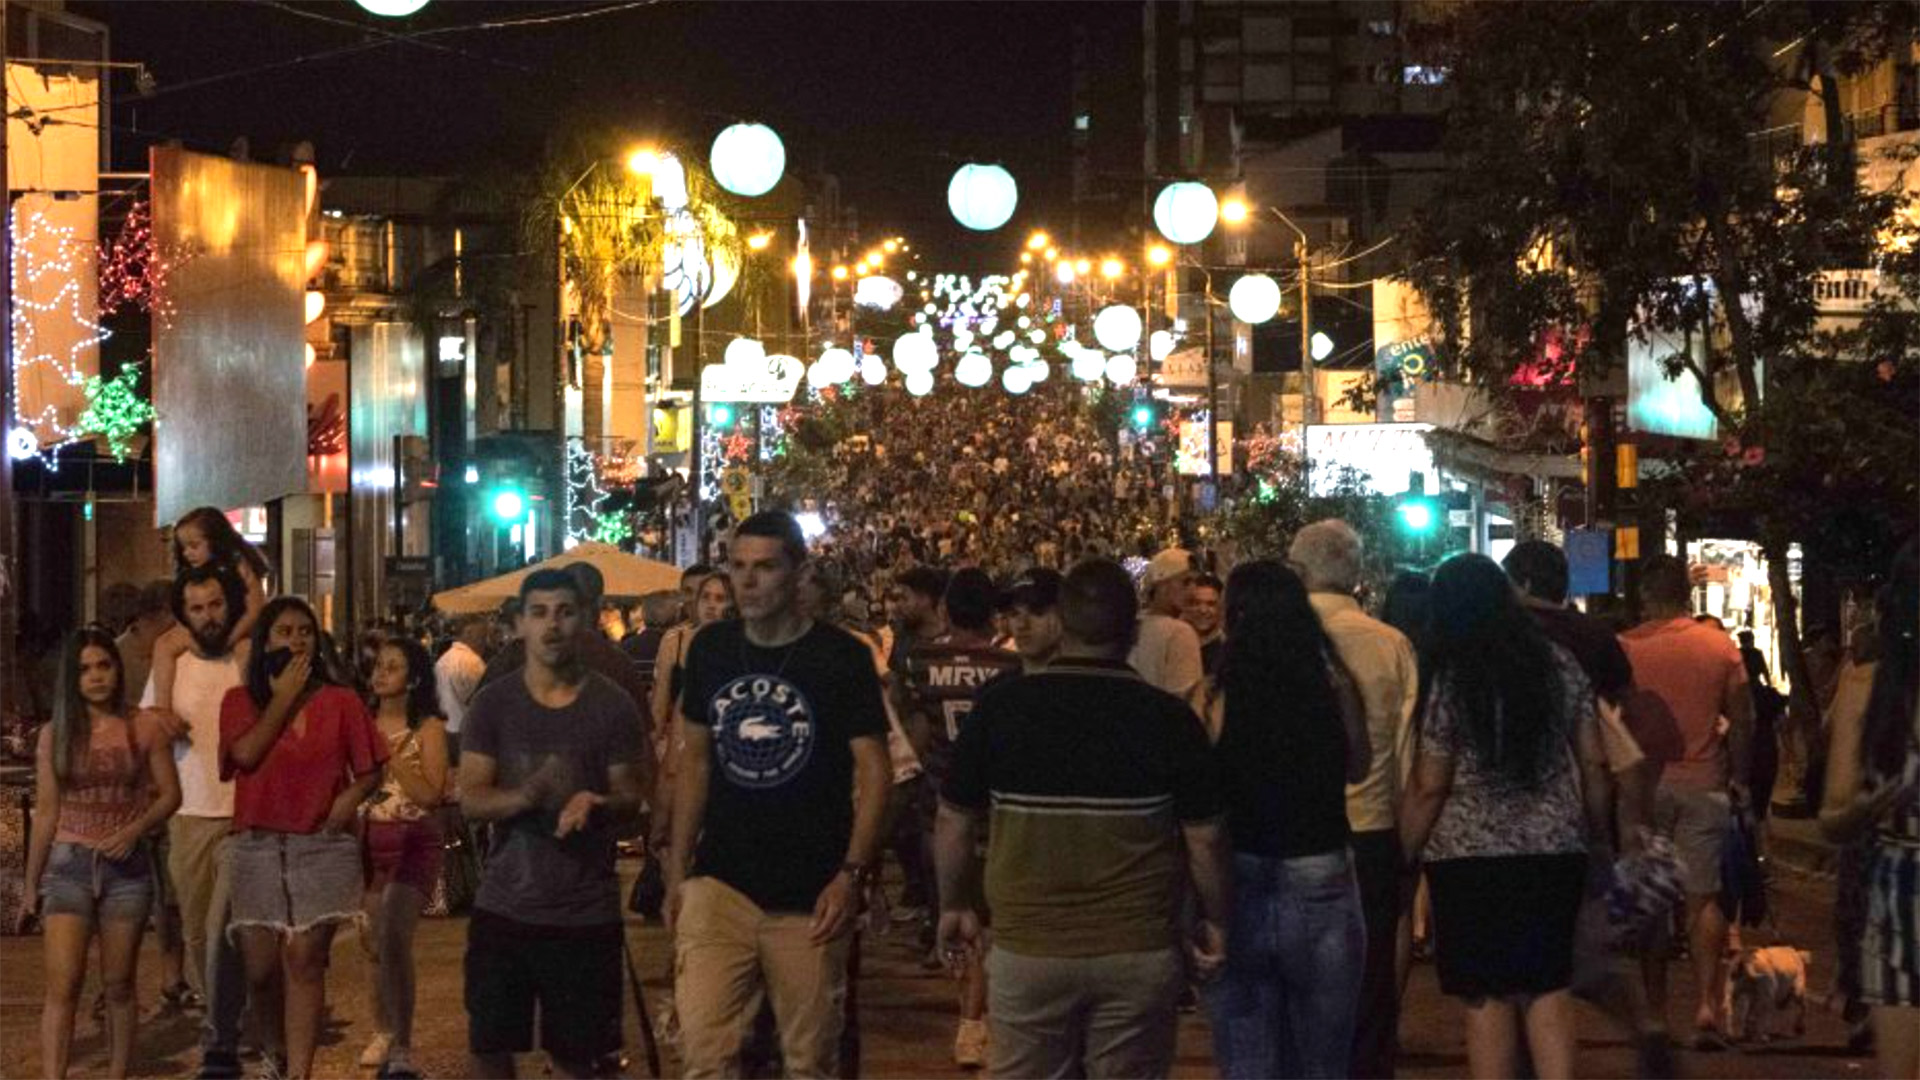 Se definió que el 16 de diciembre se llevará a cabo la Noche Mágica, la noche de descuentos que funciona igual que el Black Friday, pero en la frontera entre Brasil y Uruguay